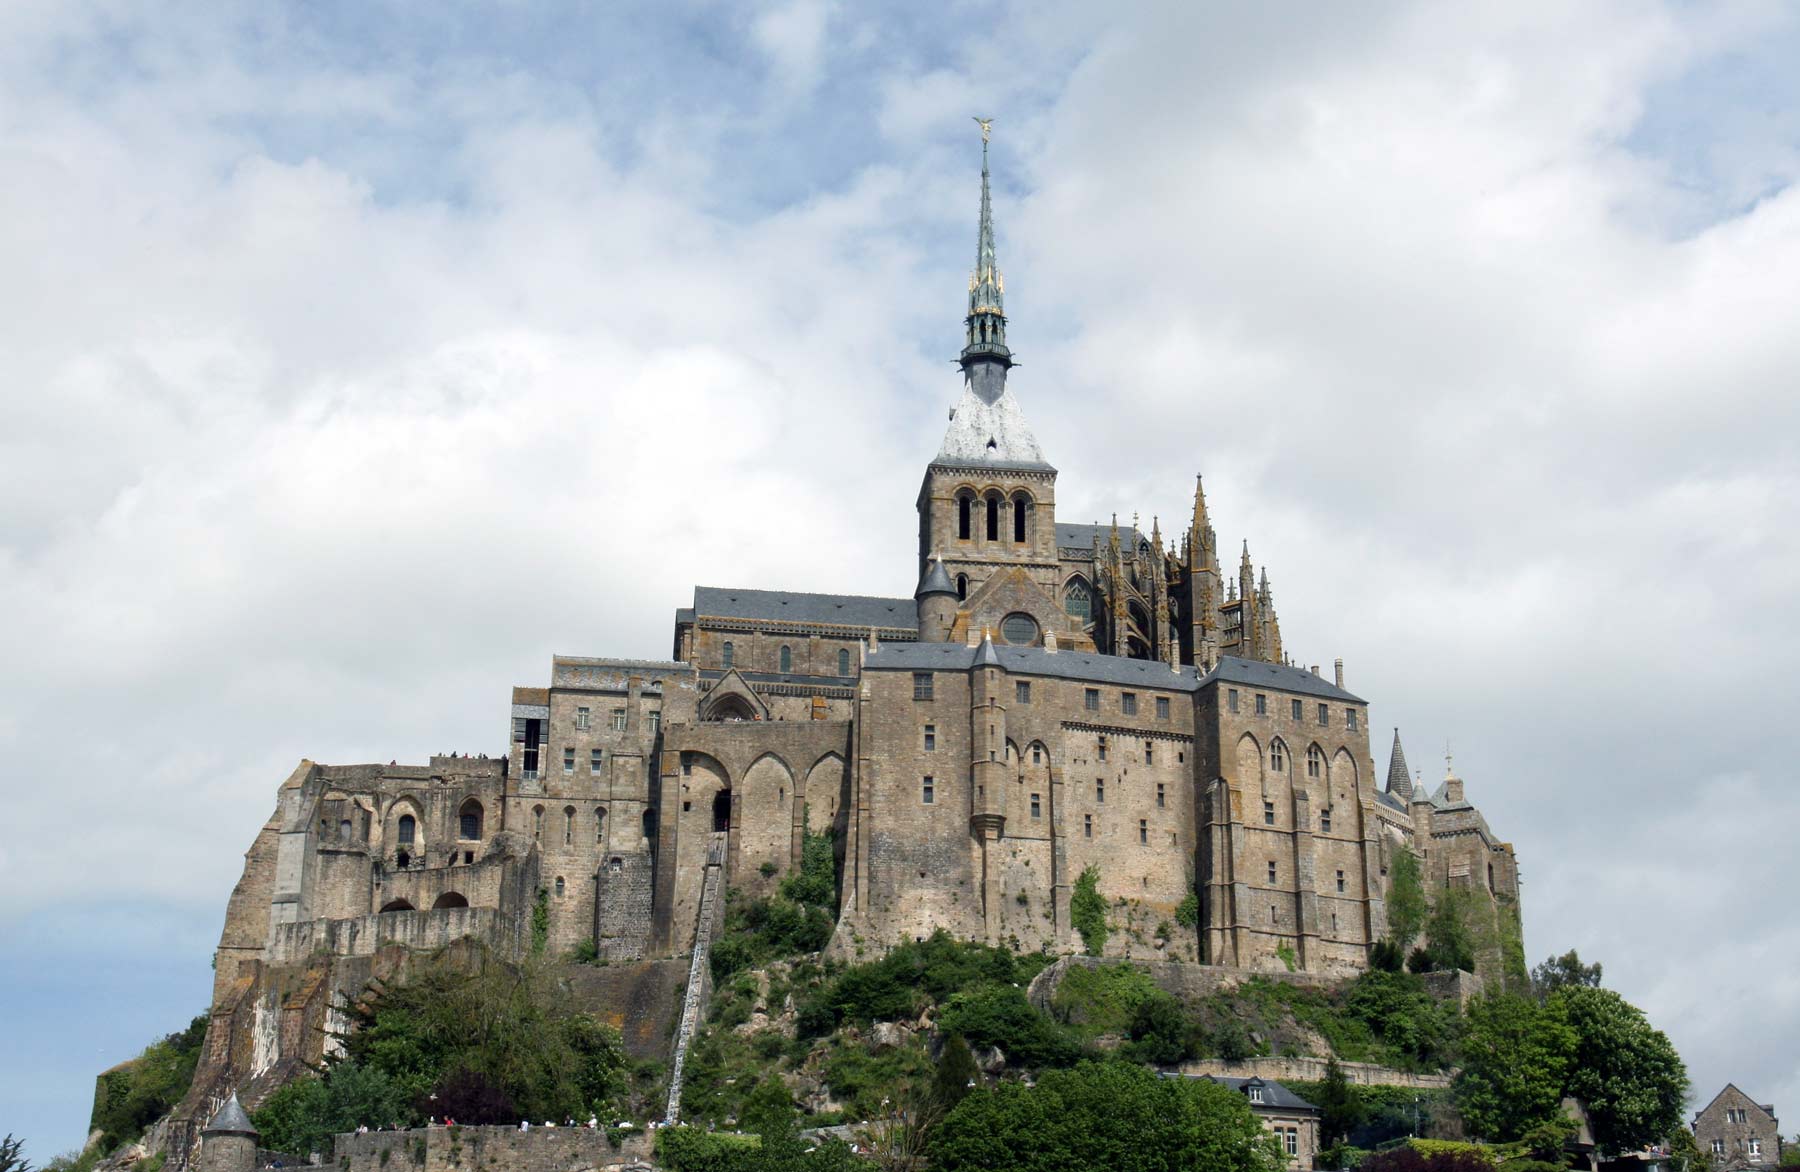 De Mont Saint Michel in Normandie Frankrijk